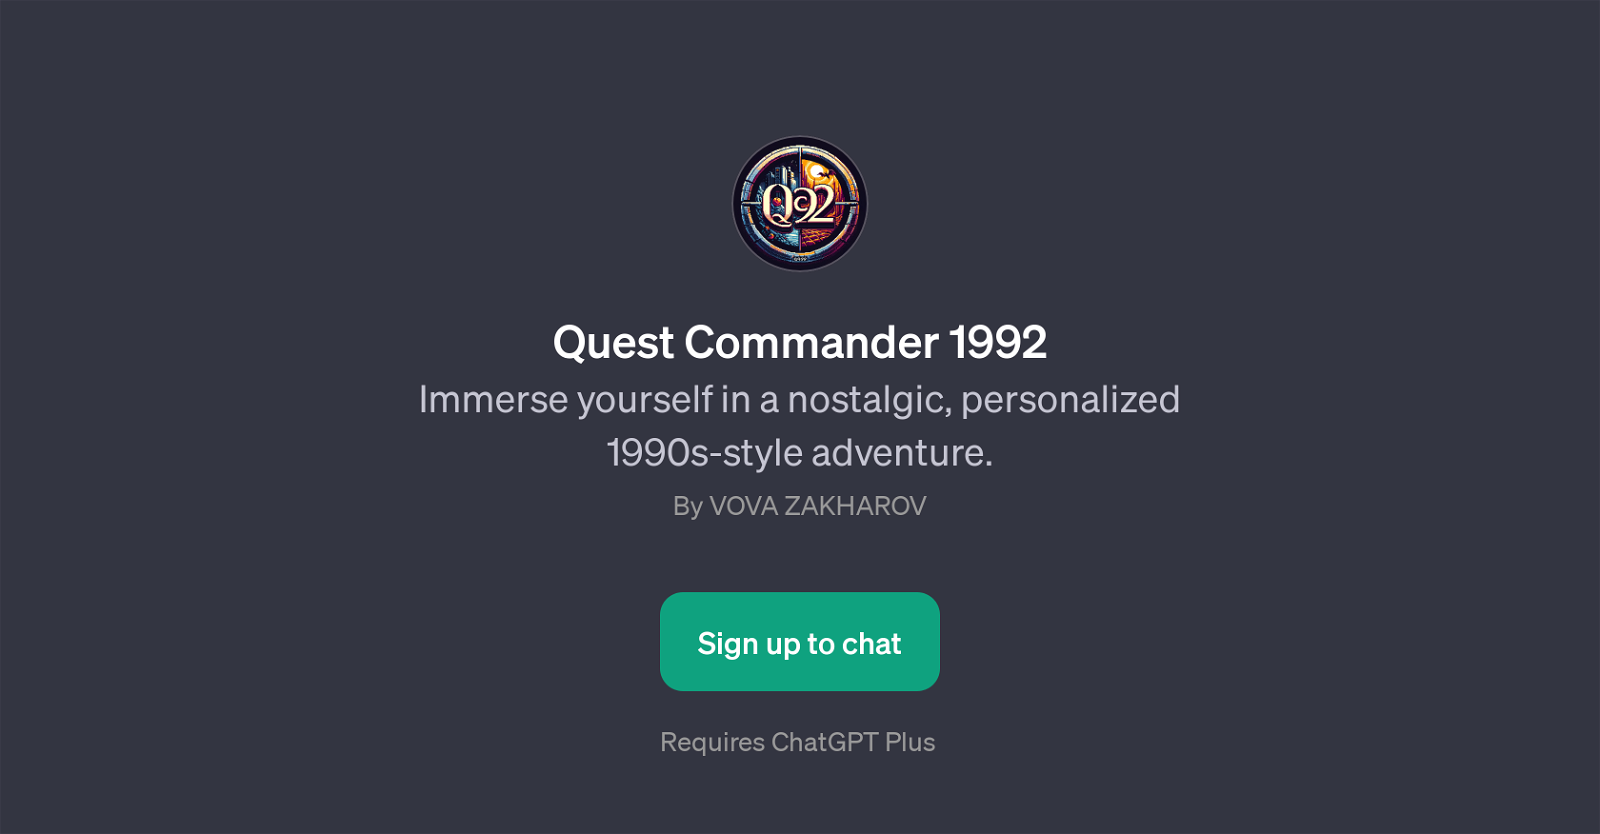 Quest Commander 1992 website